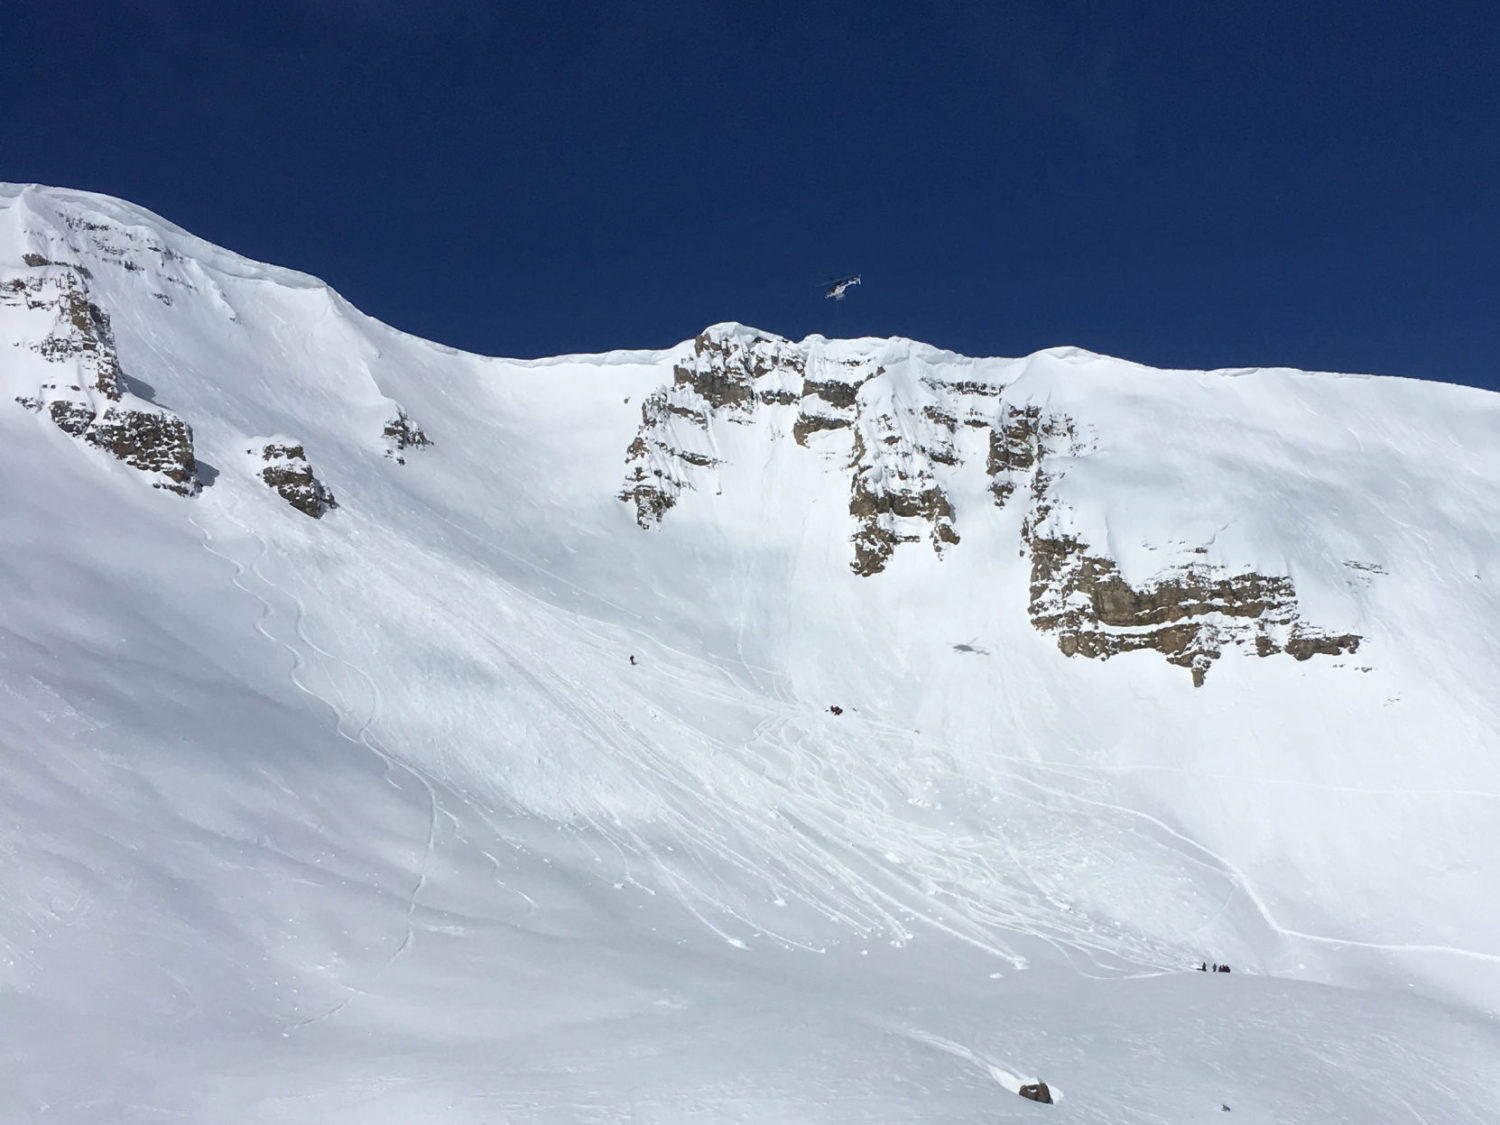 Jackson hole, pro skier, critical